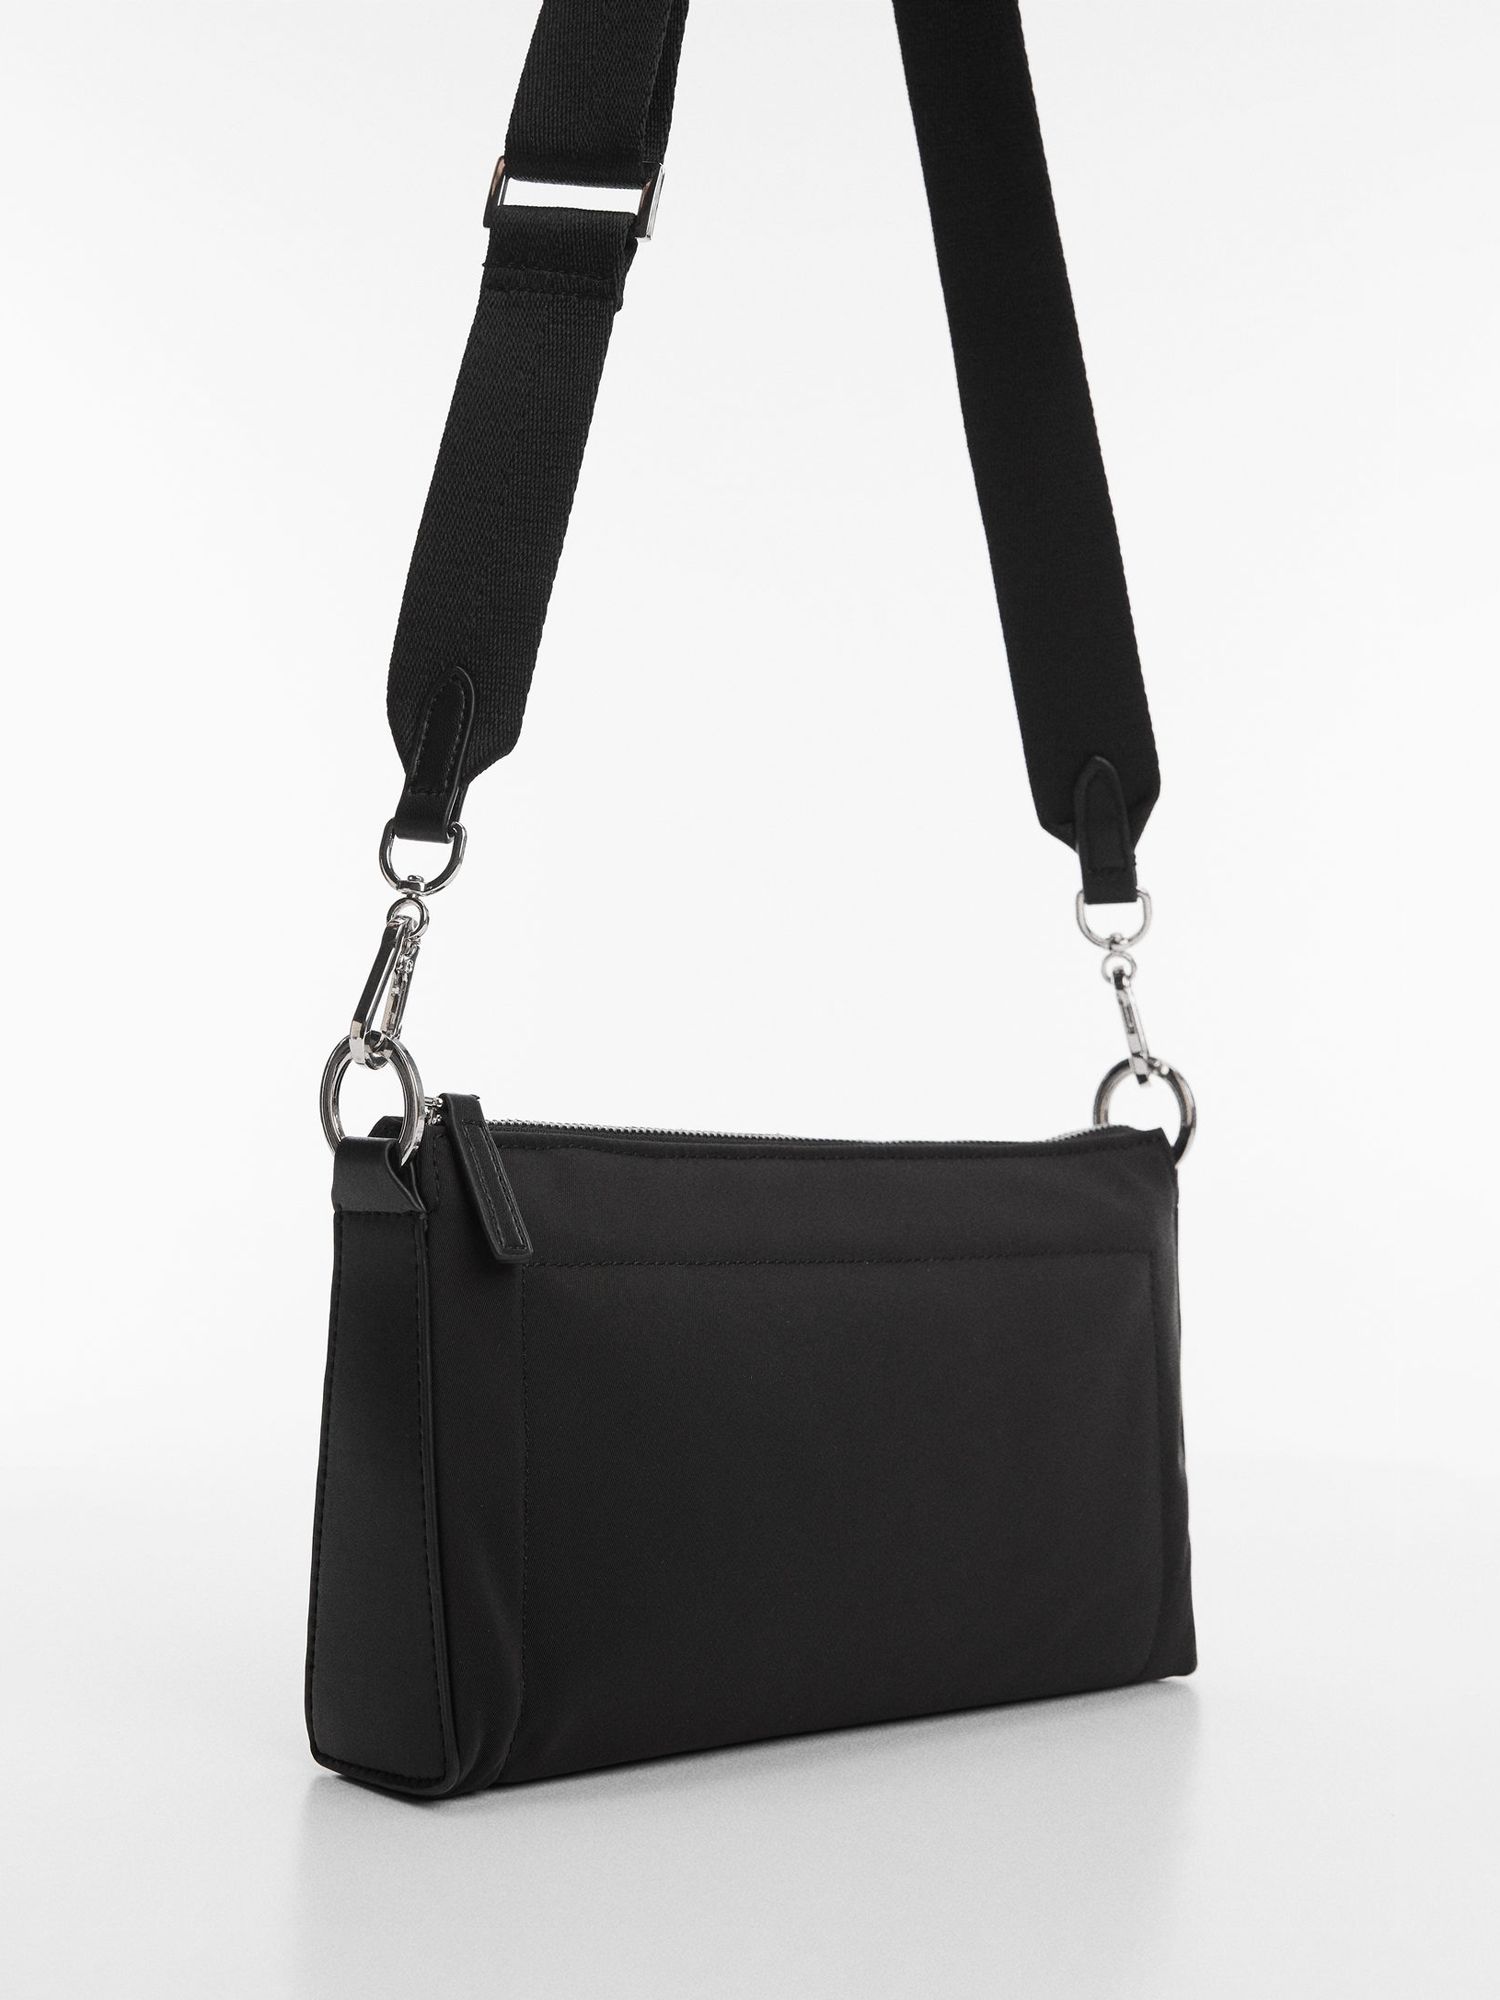 Mango Gina Double Handle Padded Bag, Black at John Lewis & Partners